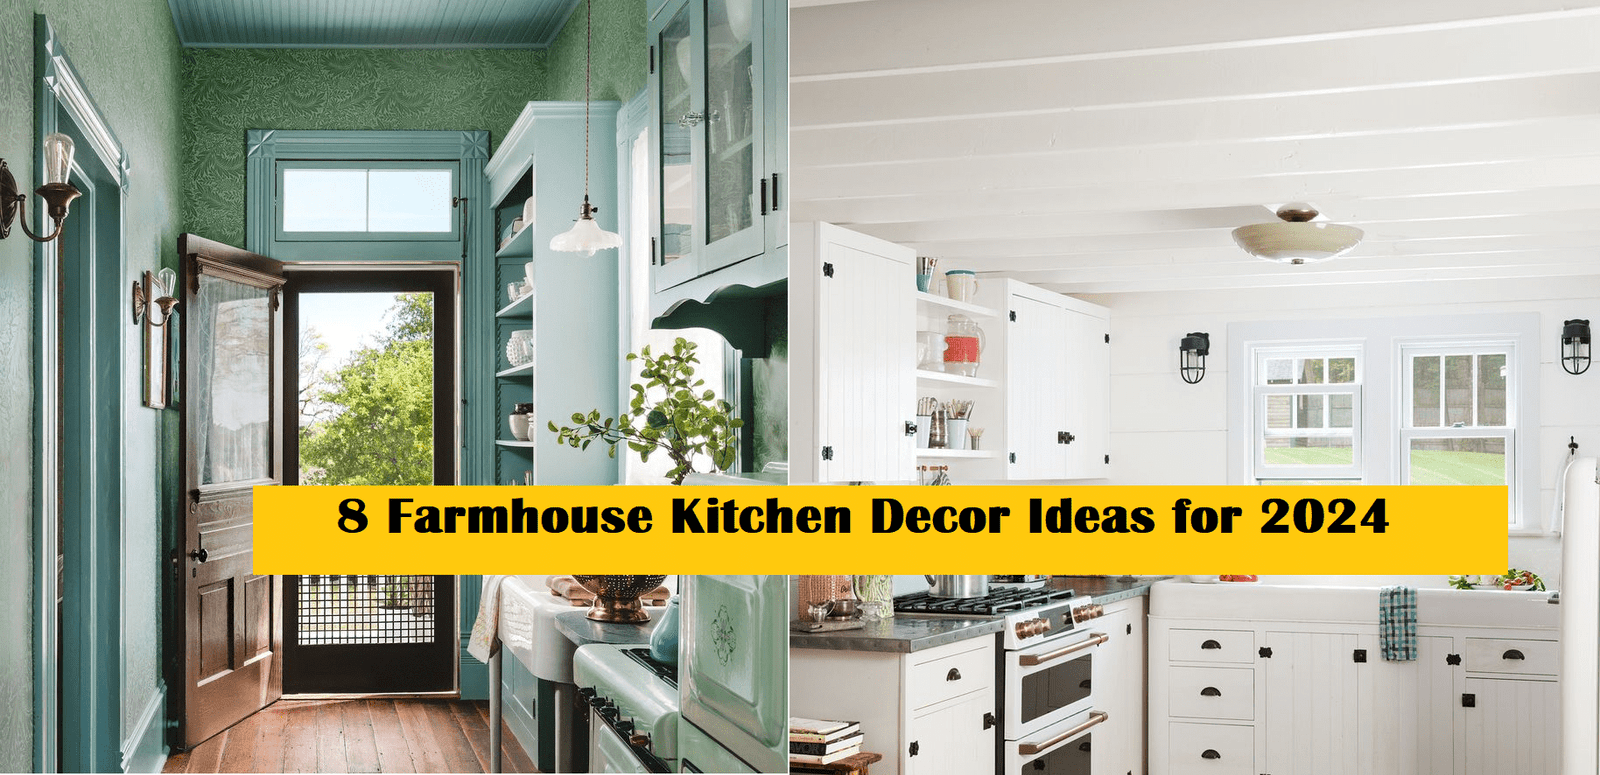 8 Farmhouse Kitchen Decor Ideas for 2024